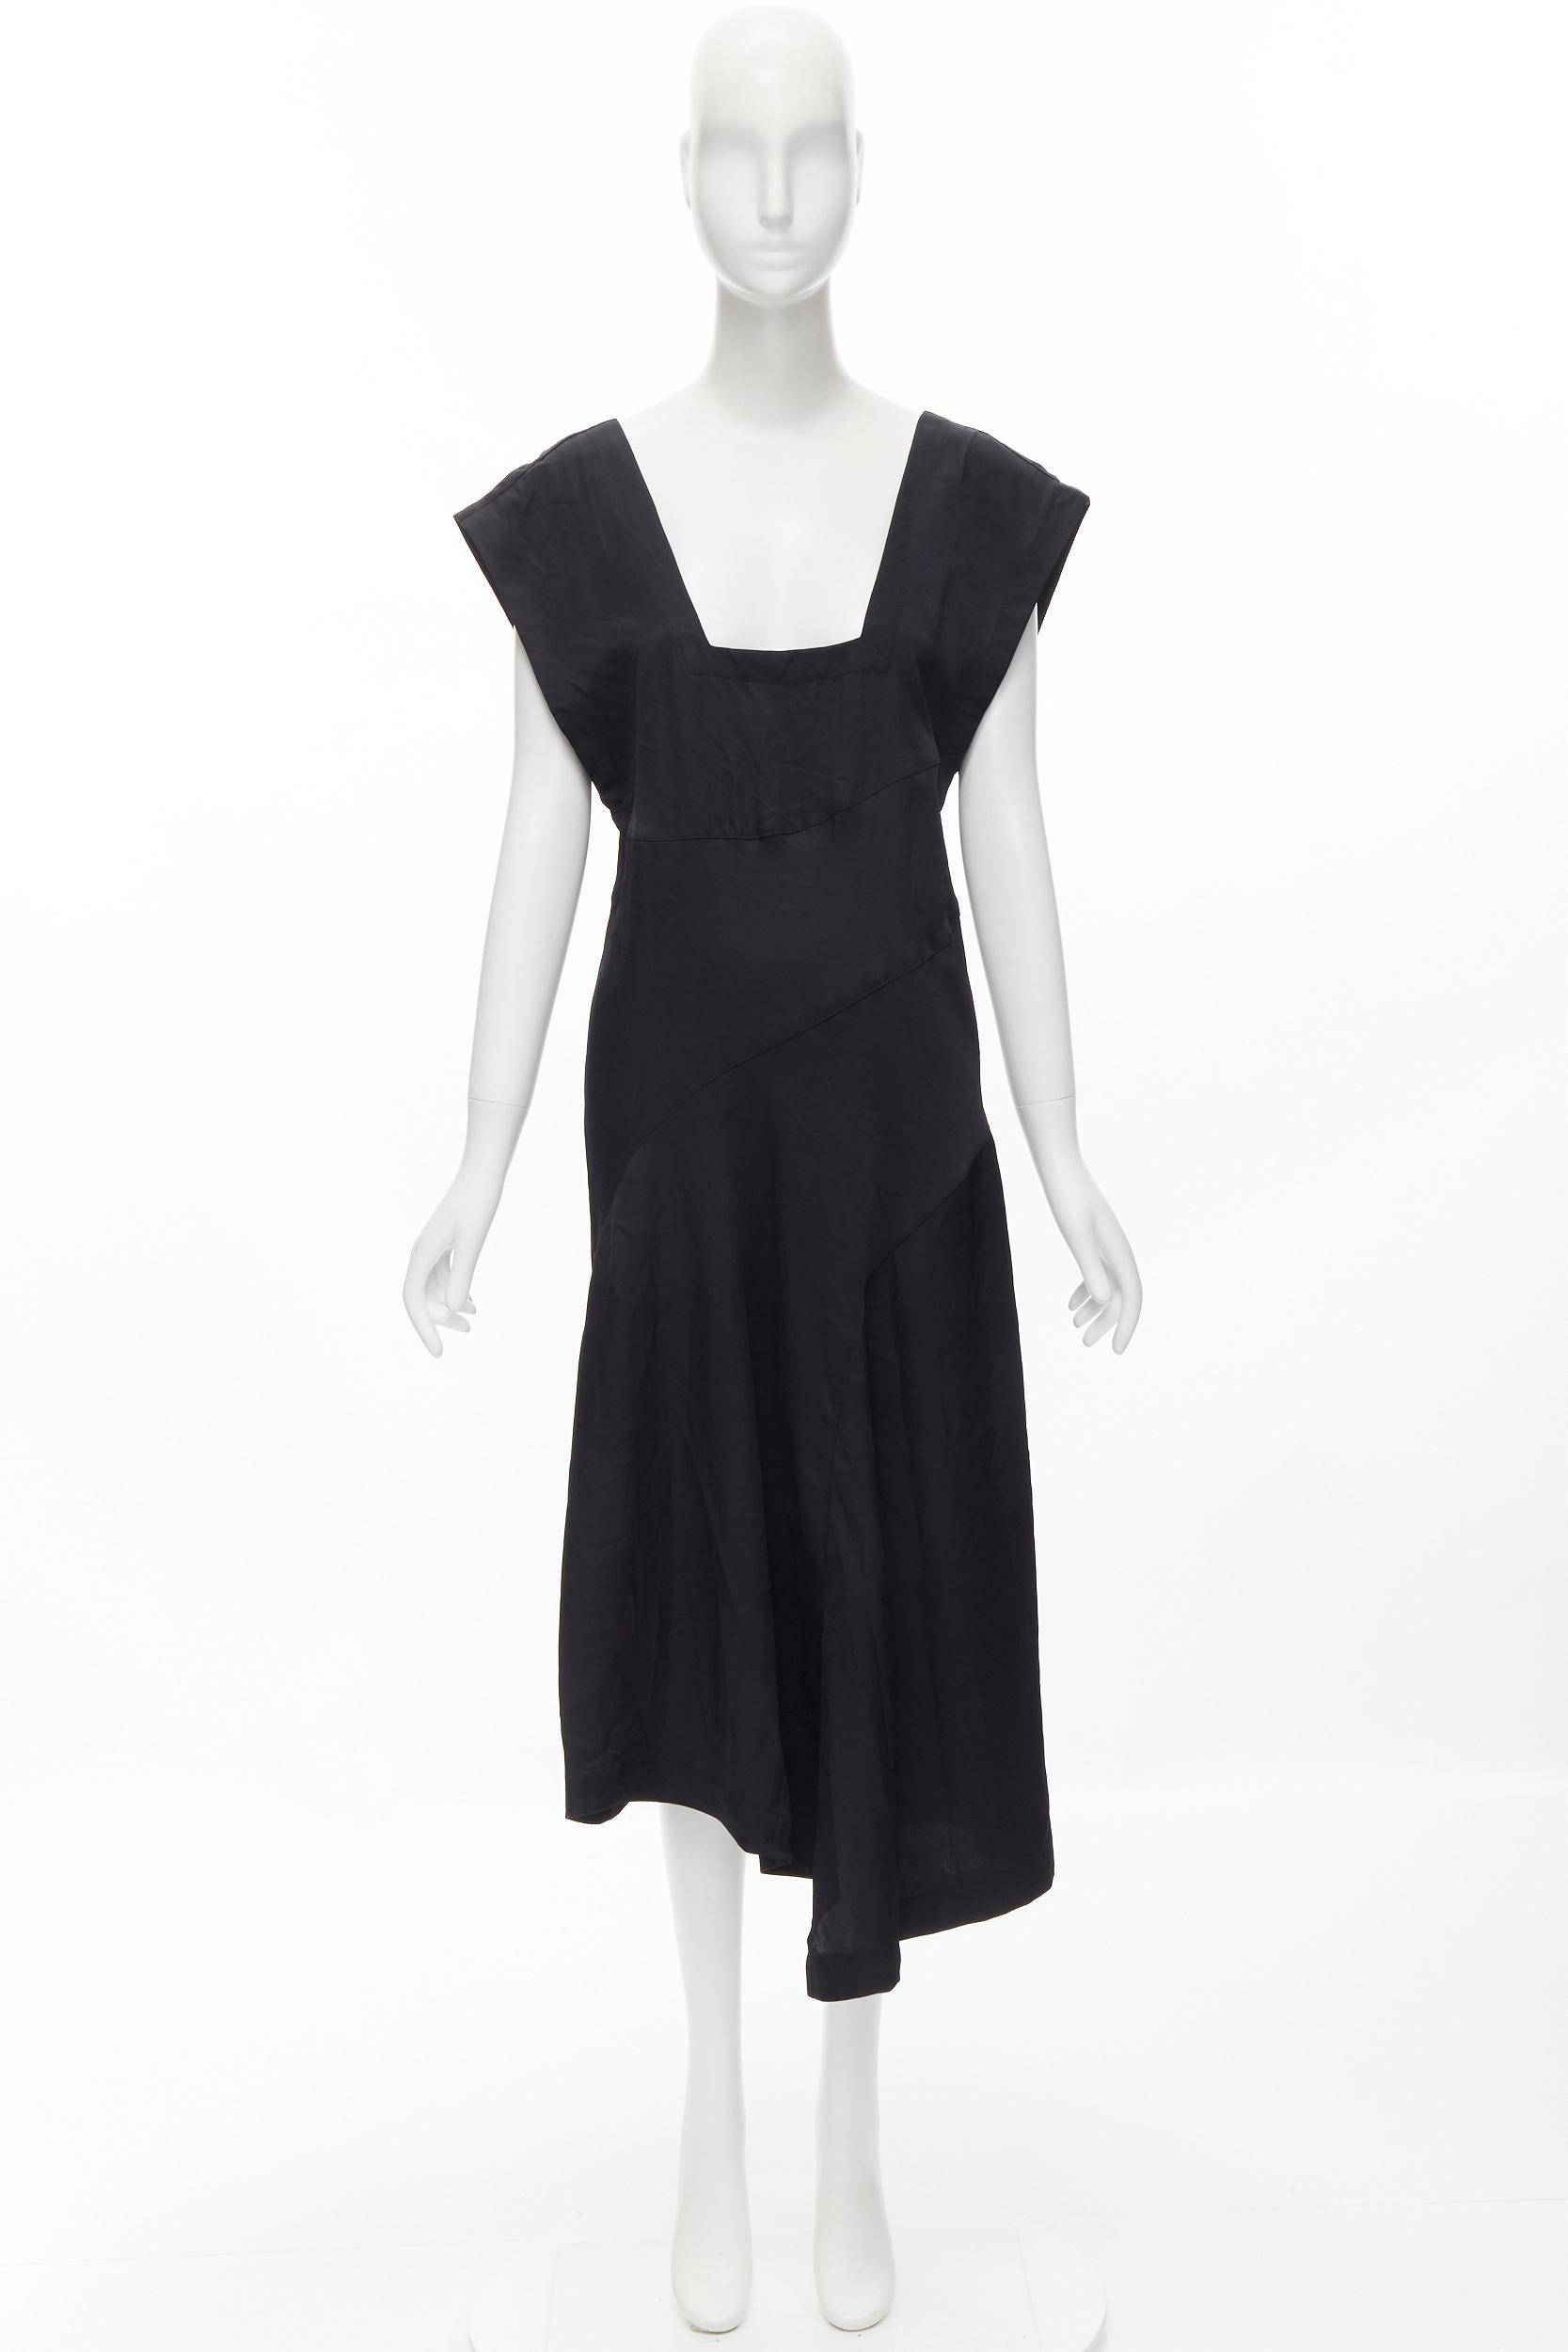 COMME DES GARCONS Vintage 1980s square neck oversized bias cut dress For Sale 5